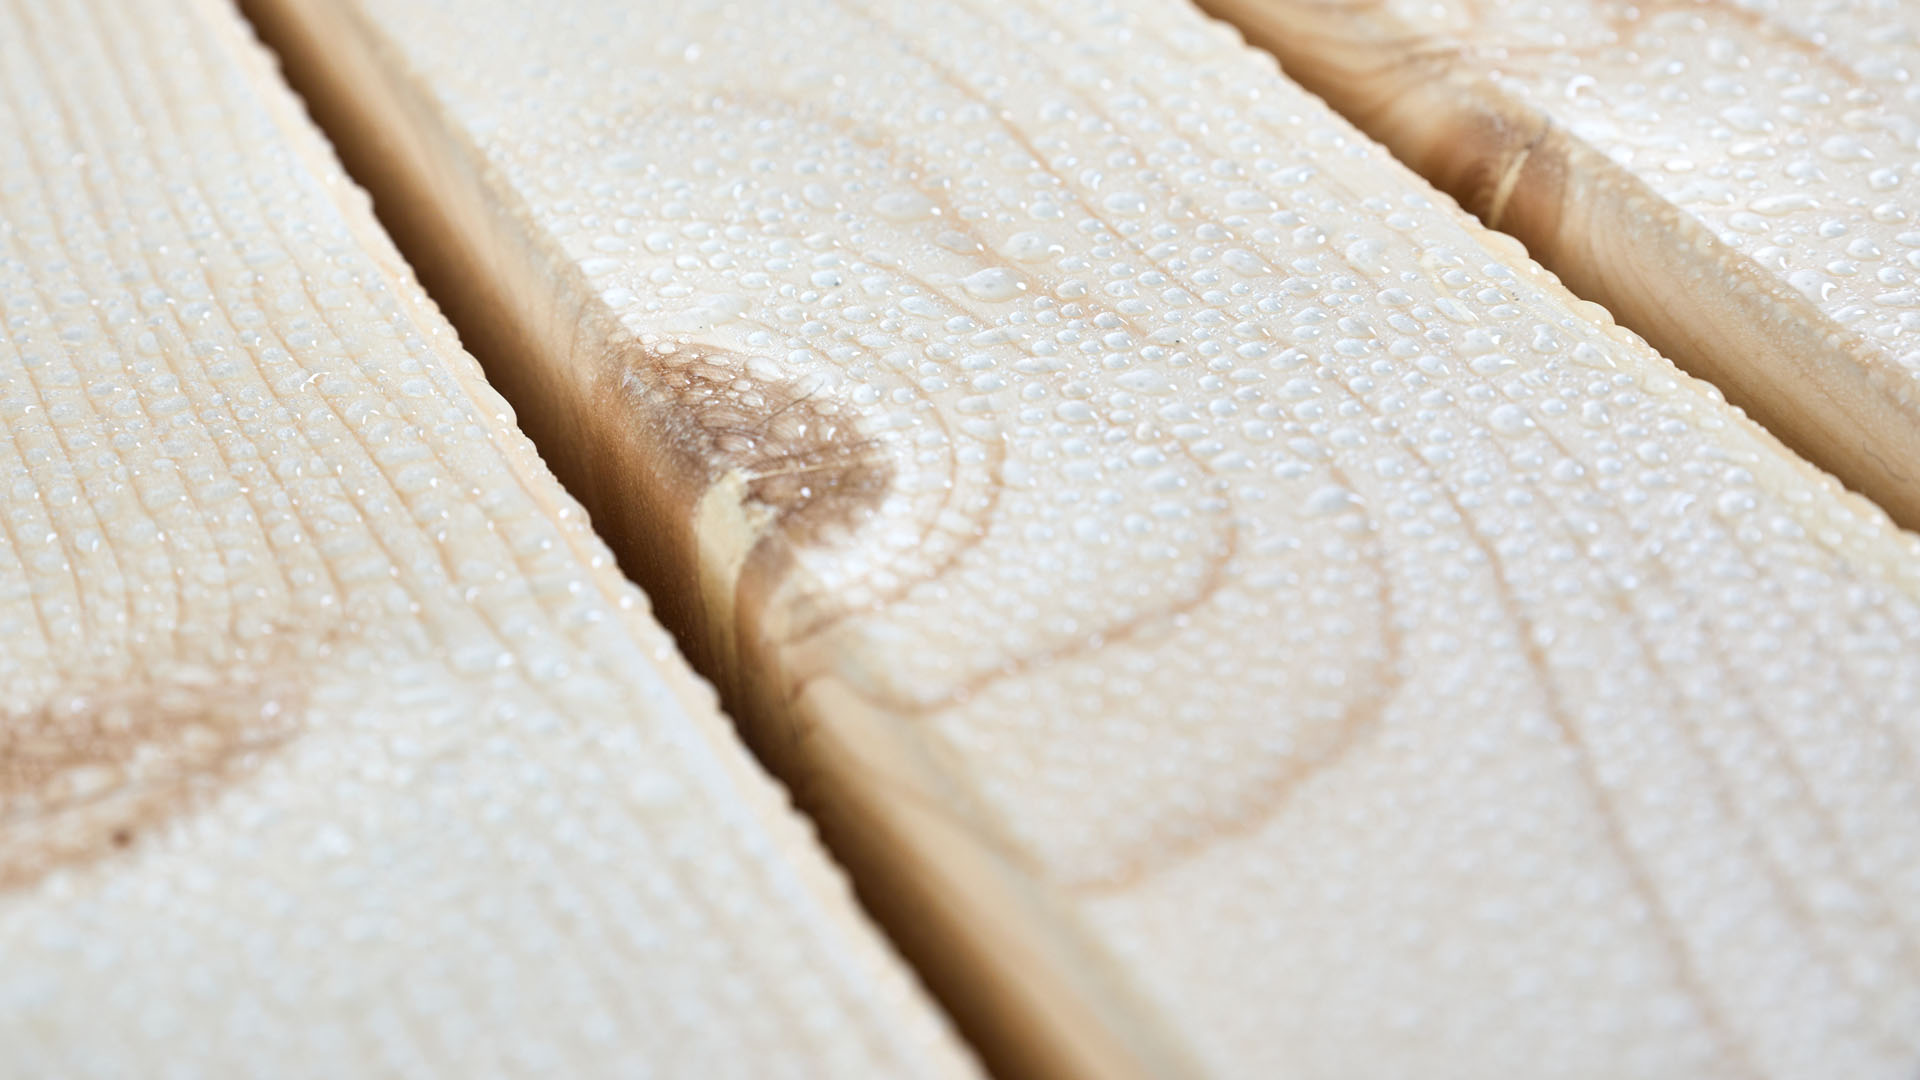 Designgarnitur SitDown mit Wassertropfen auf der Oberfläche des Holzes. Die UV-Lasur schützt die Tischplatte vor Verformungen und Verfärbungen. Das Set ist somit witterungsbeständig und schwer entflammbar.